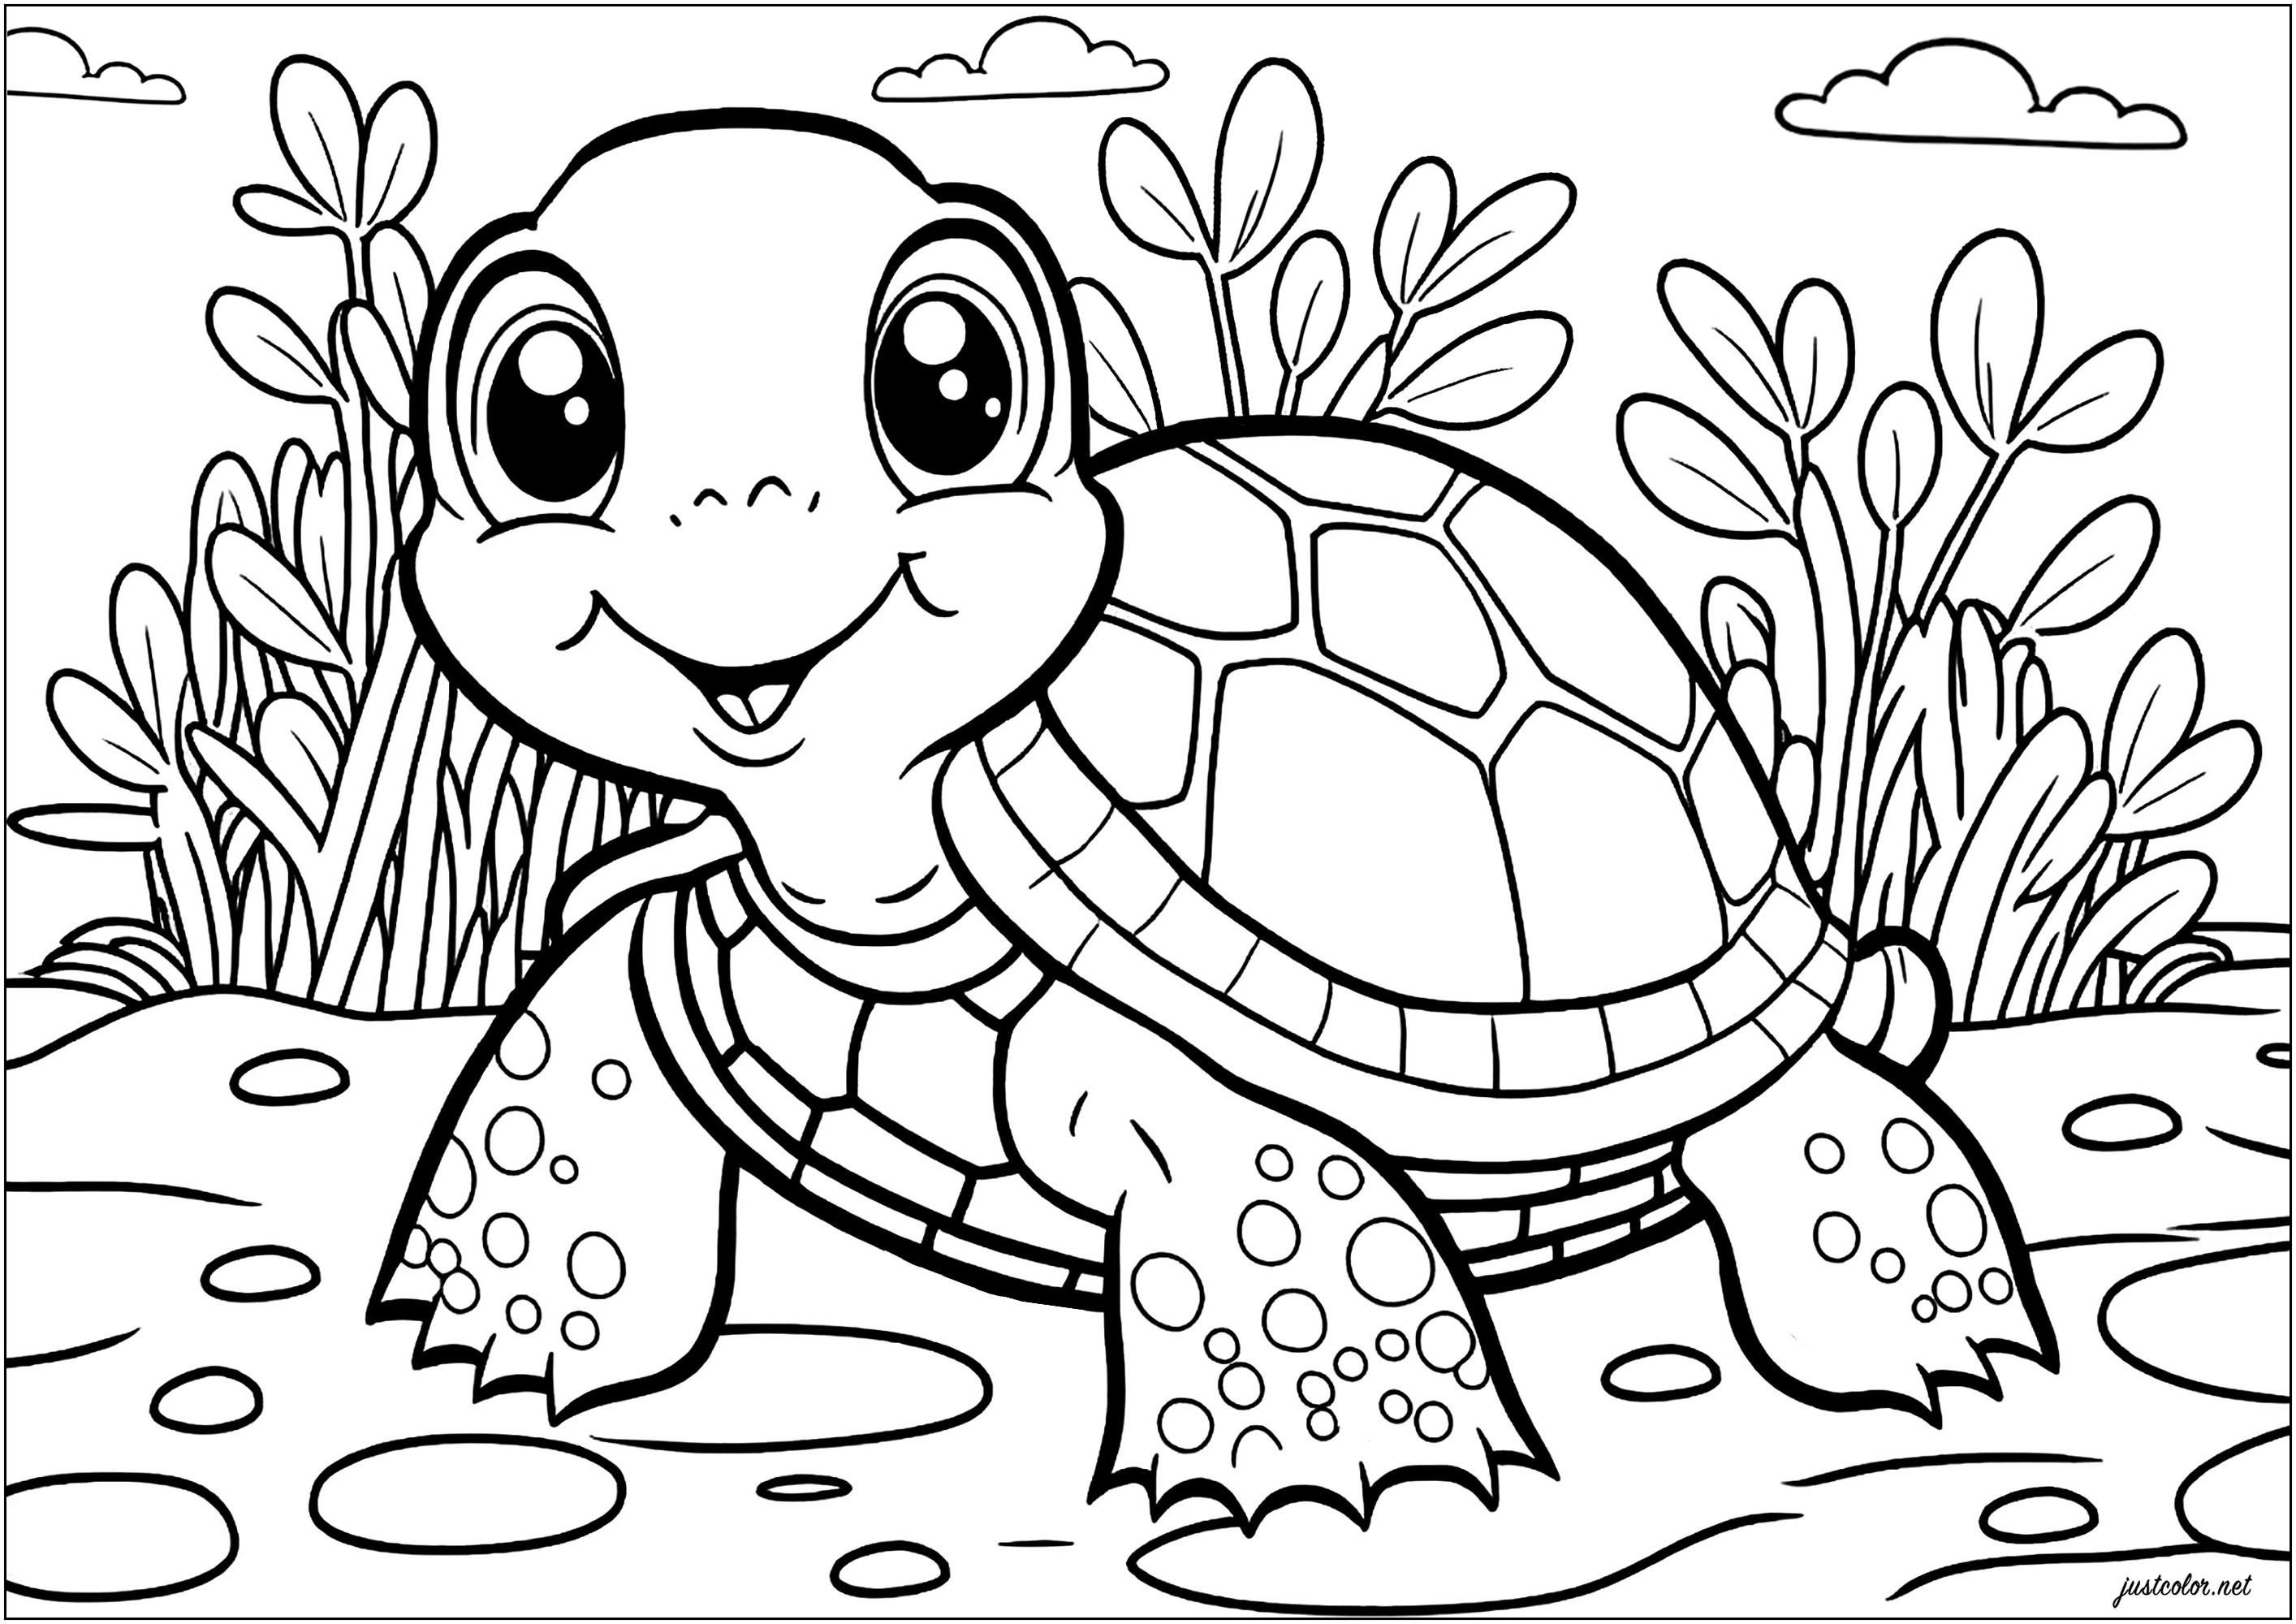 Simple coloriage d'une tortue. Dessinez le monde de la nature autour de cette tortue avec votre créativité et vos couleurs préférées.